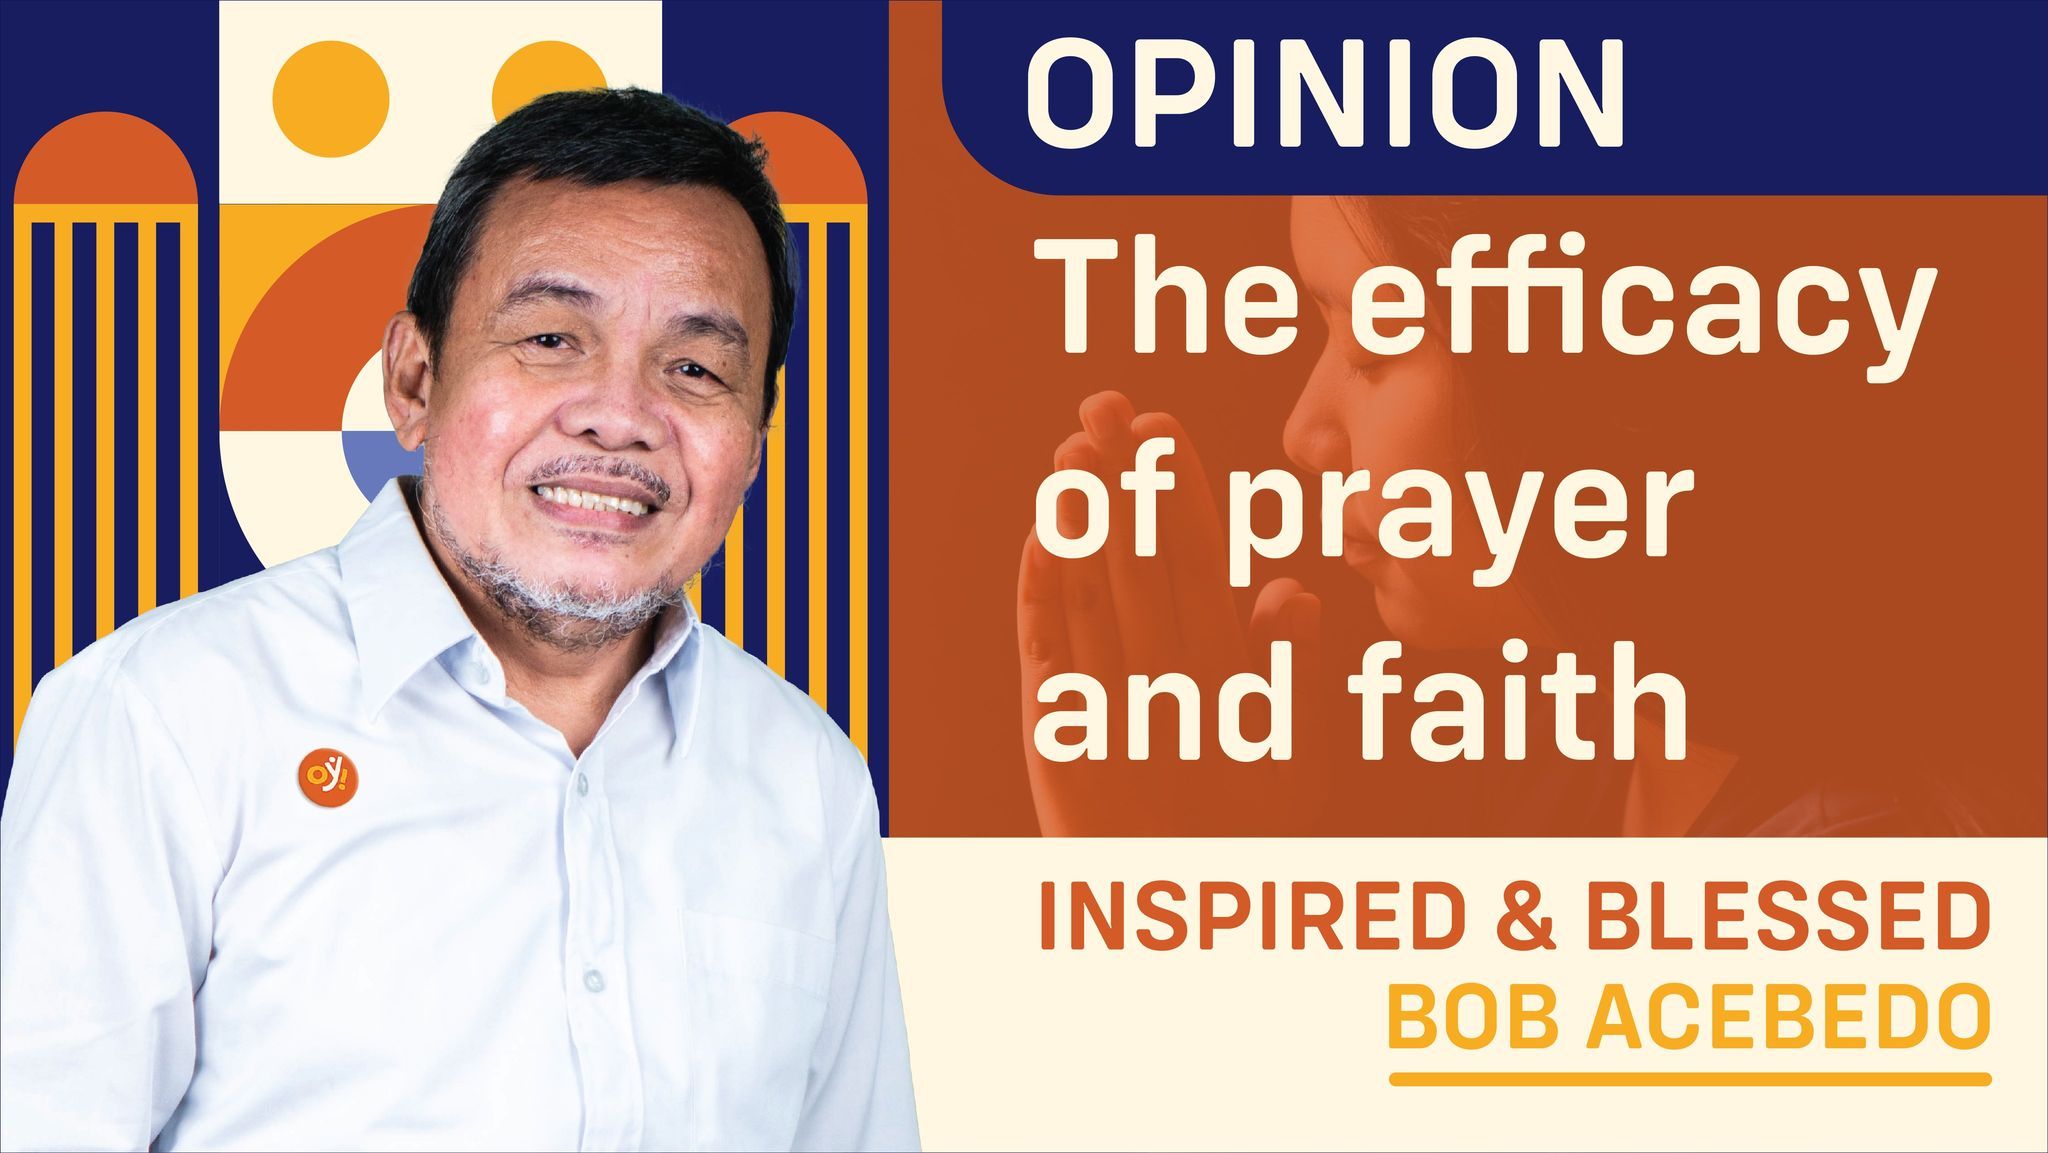 The efficacy of prayer and faith